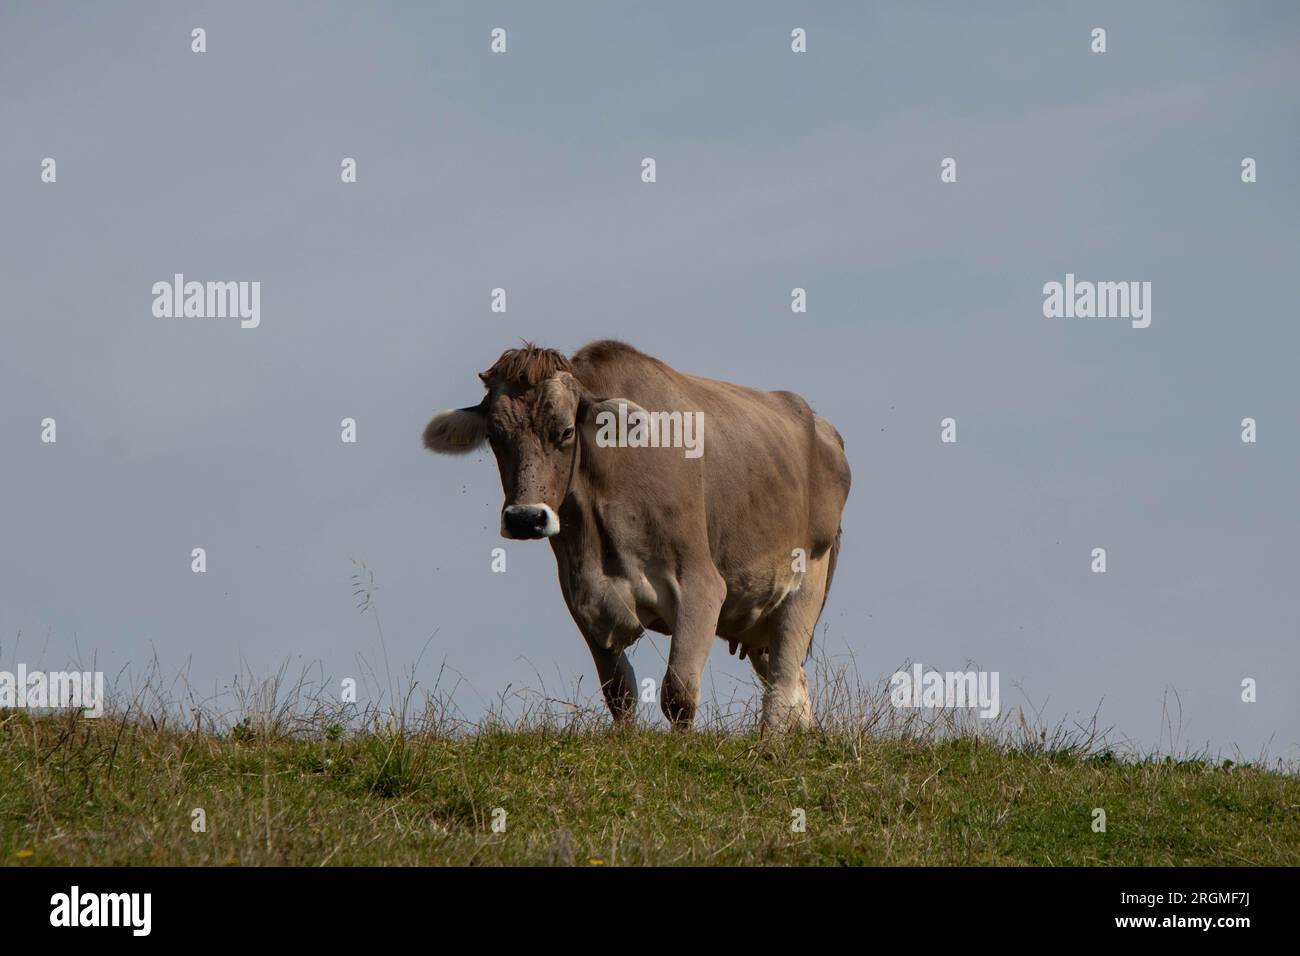 Vache dans une prairie, vue de côté. Photo de haute qualité Banque D'Images